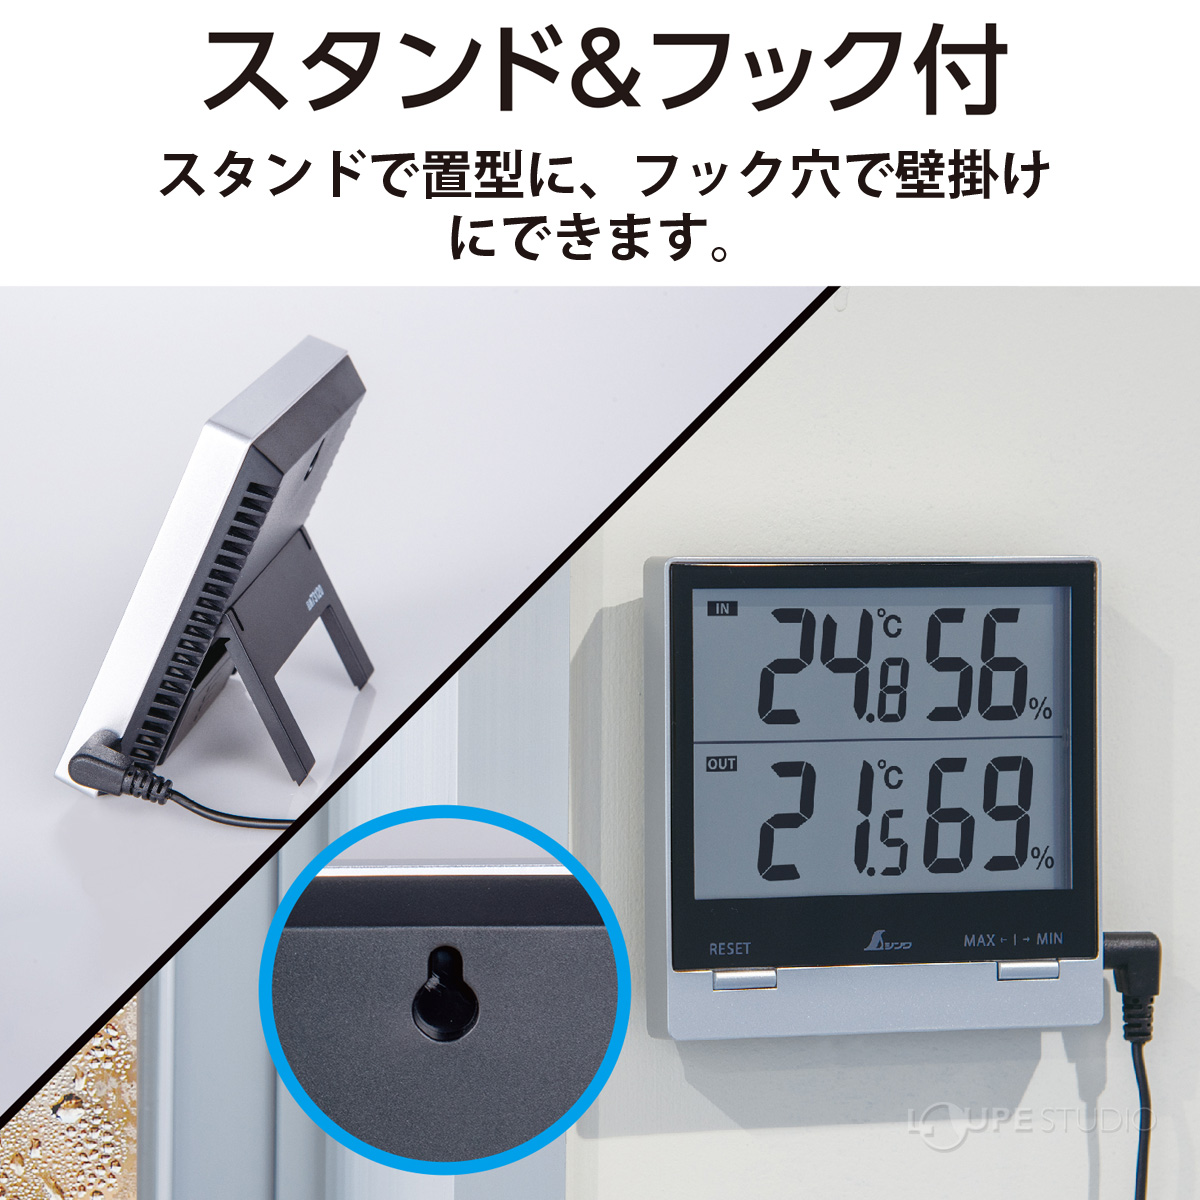 7735円 注文割引 シンワ測定 Shinwa Sokutei デジタル温度計 Smart A 73116 5個入